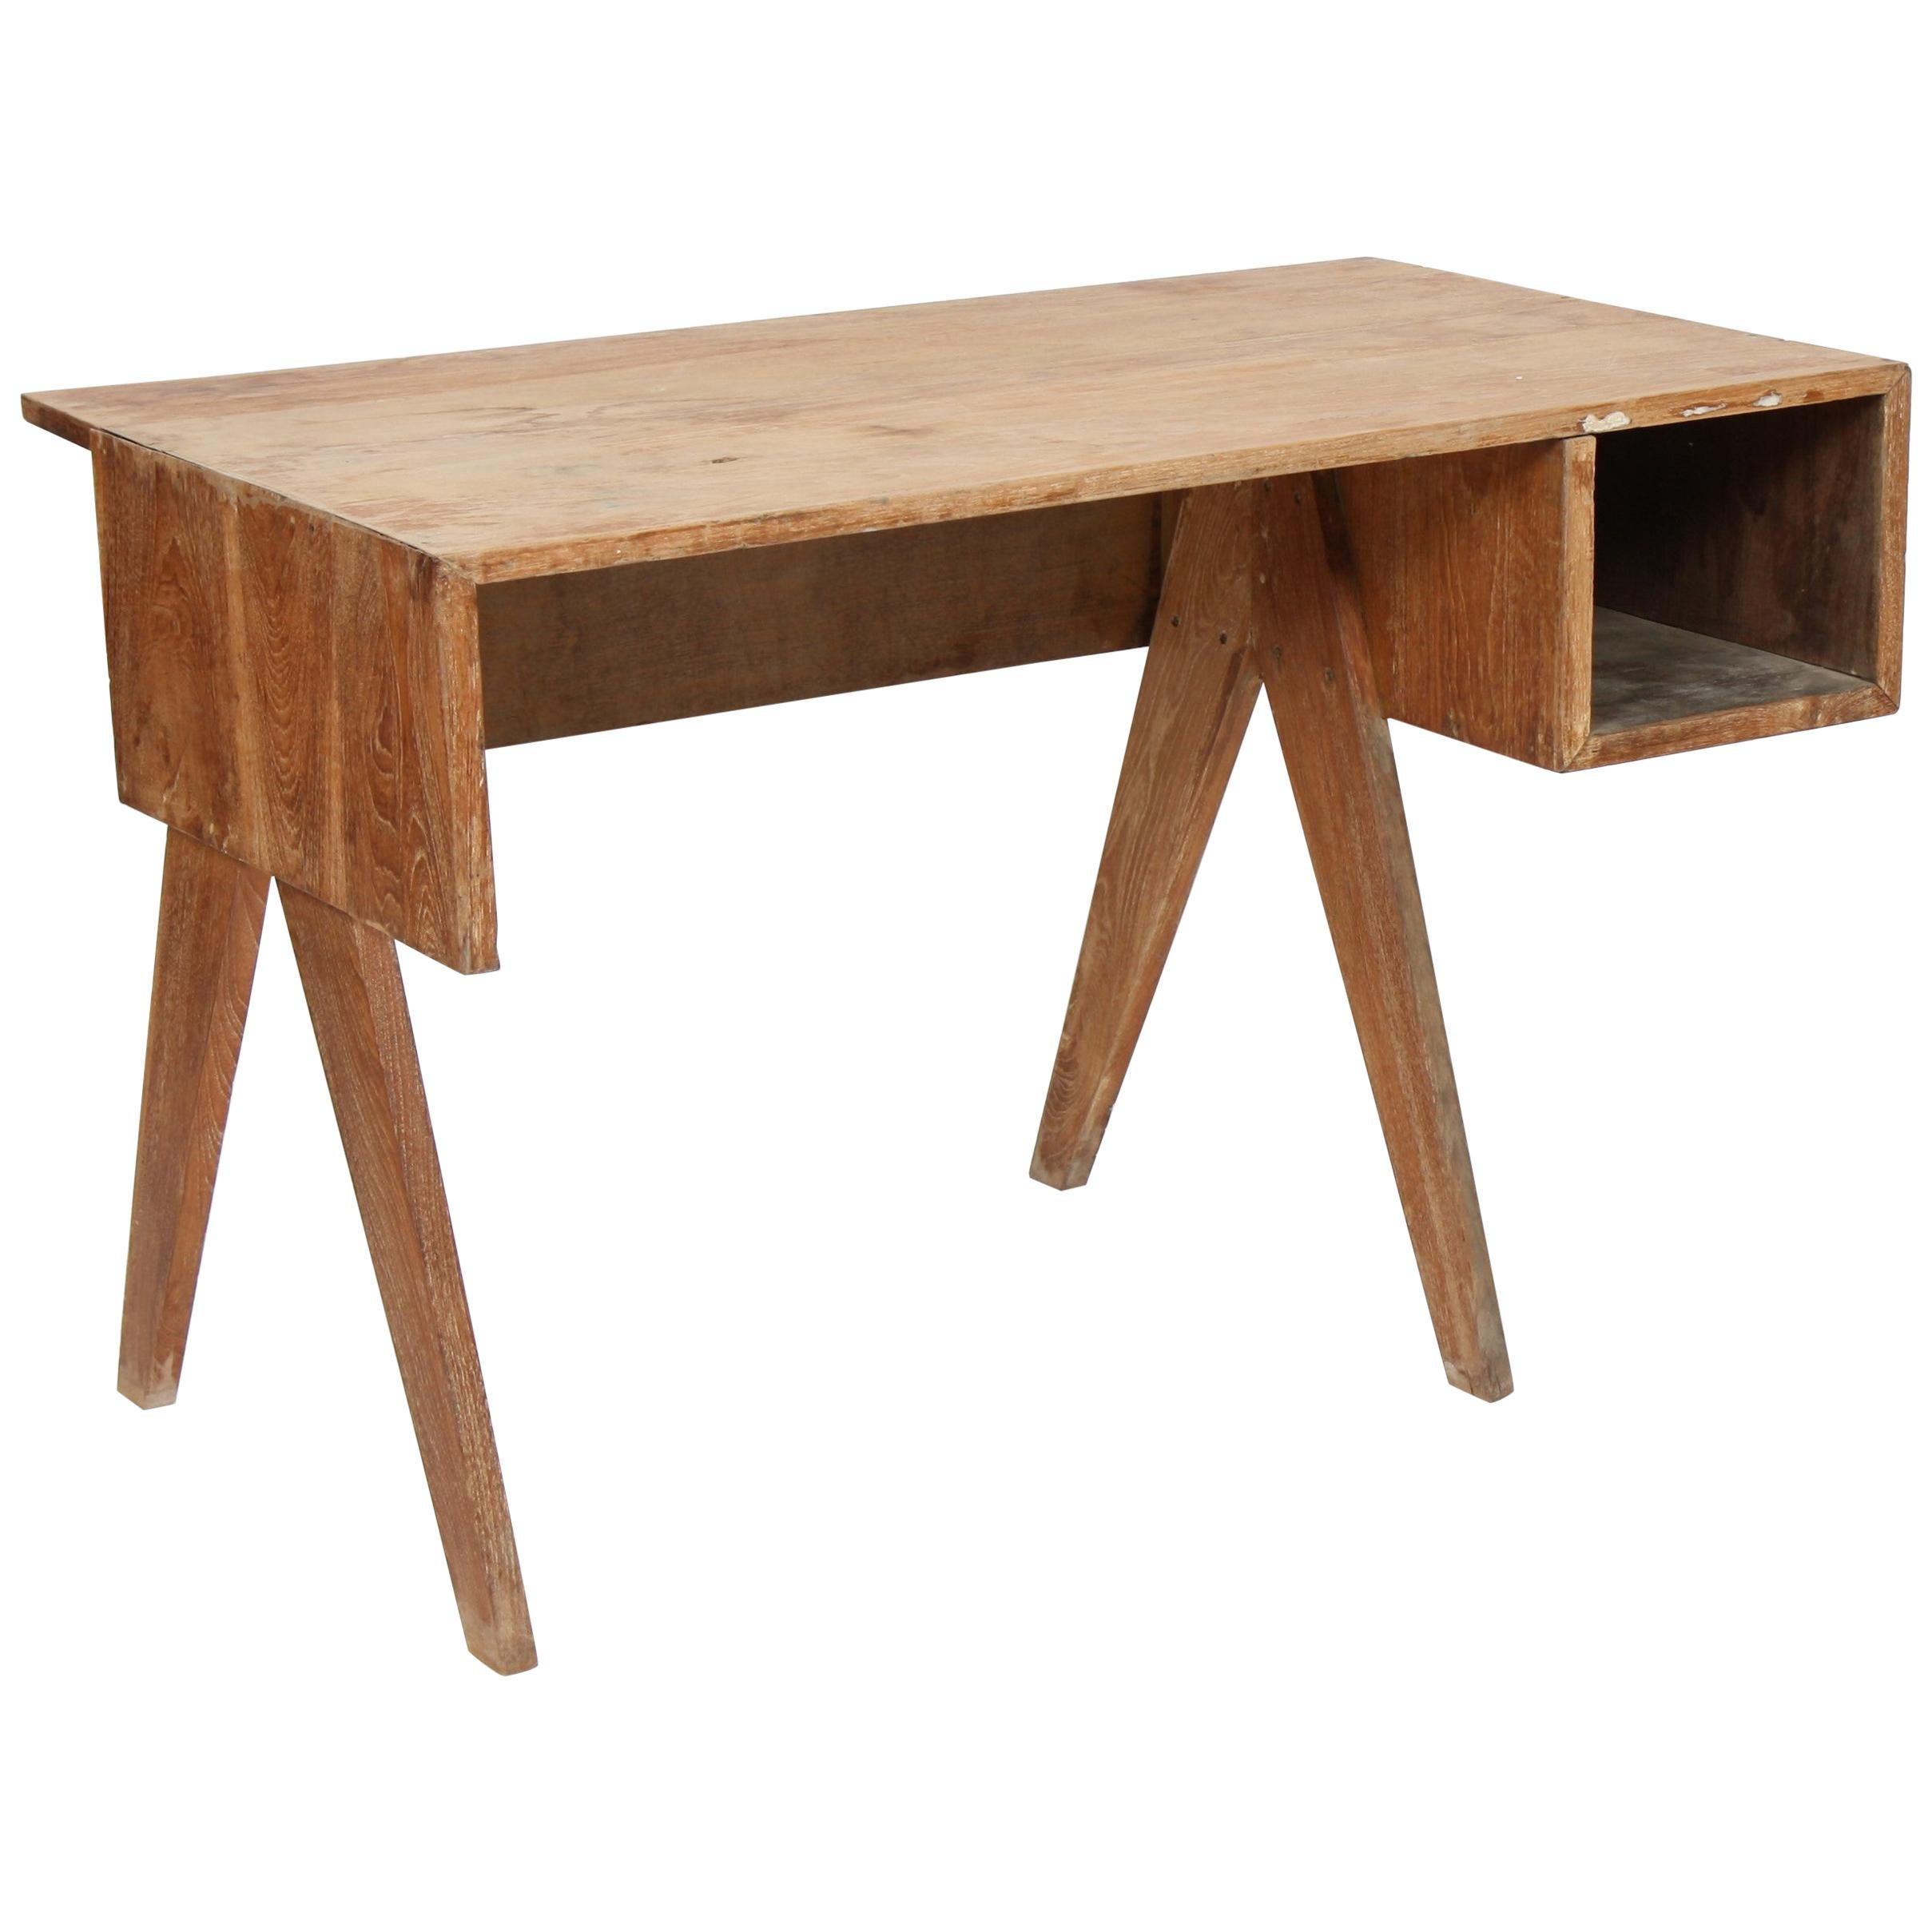 Office Solid Desk by Pierre Jeanneret